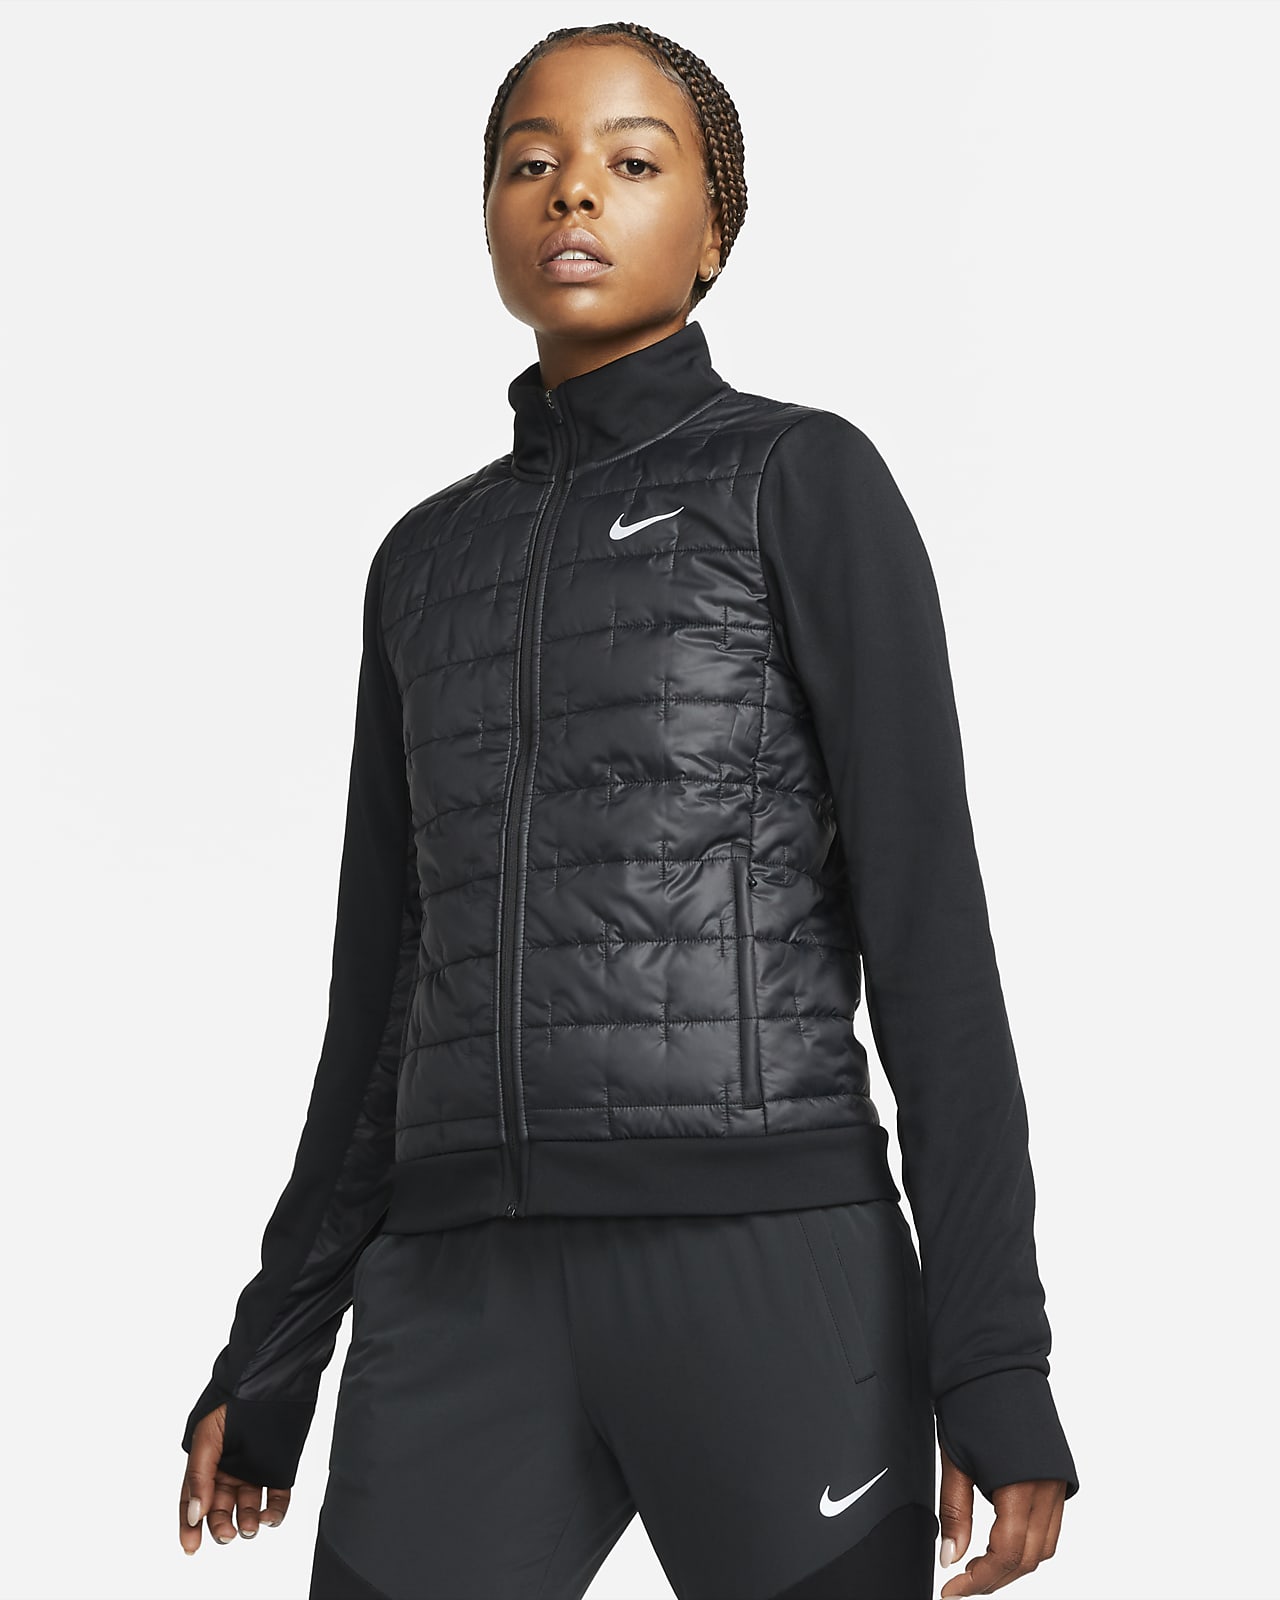 NIKE Womens Tracksuit Top Jacket UK 14 Large Black Polyester